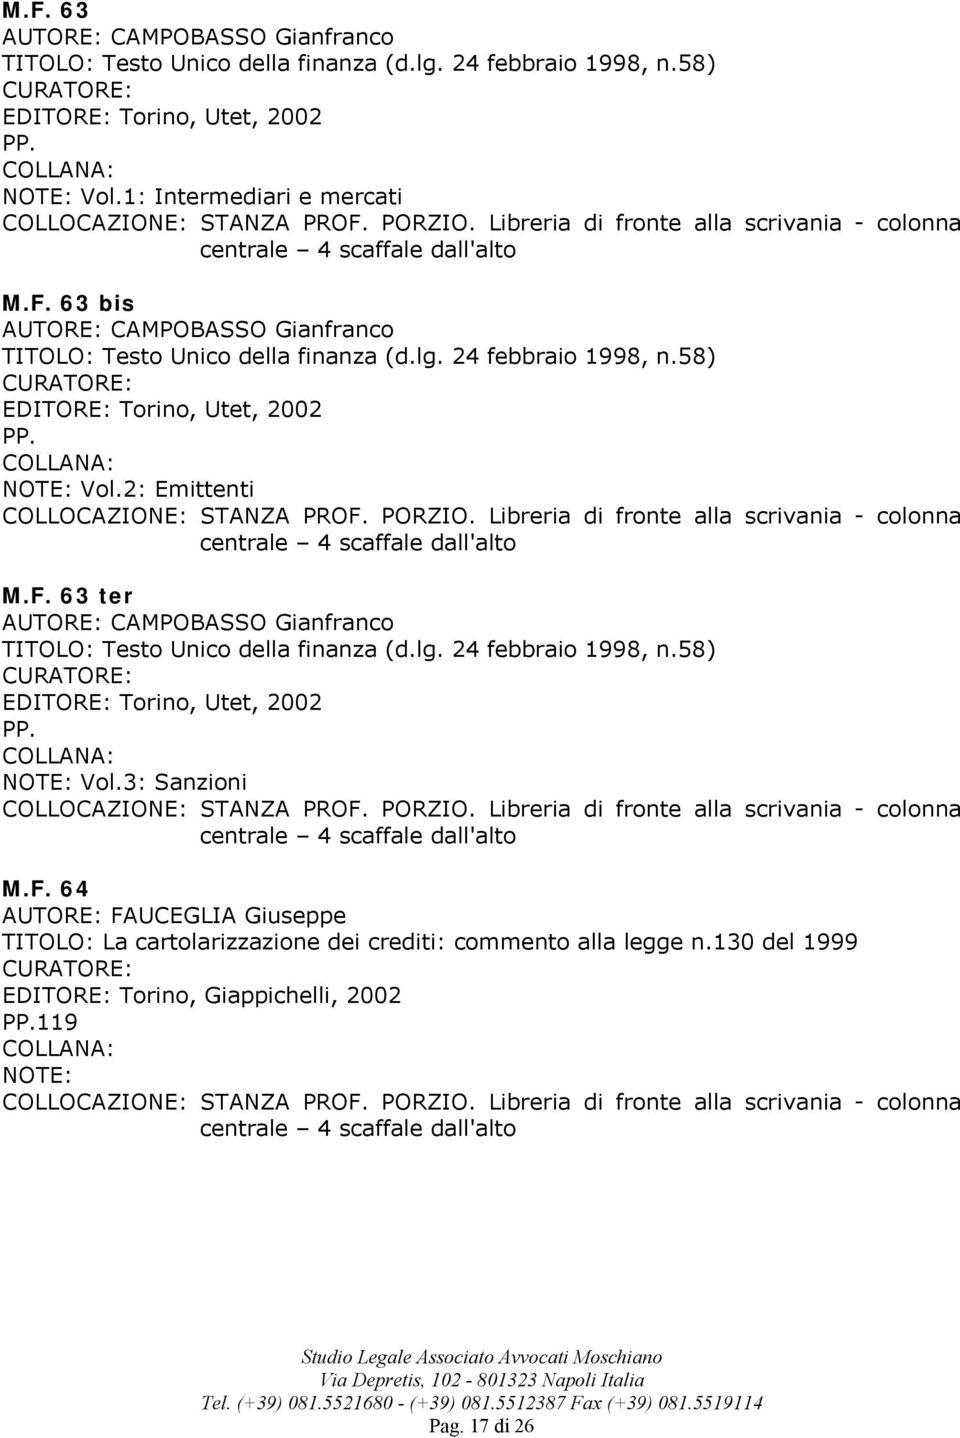 58) EDITORE: Torino, Utet, 2002 PP. Vol.2: Emittenti M.F. 63 ter CAMPOBASSO Gianfranco TITOLO: Testo Unico della finanza (d.lg. 24 febbraio 1998, n.